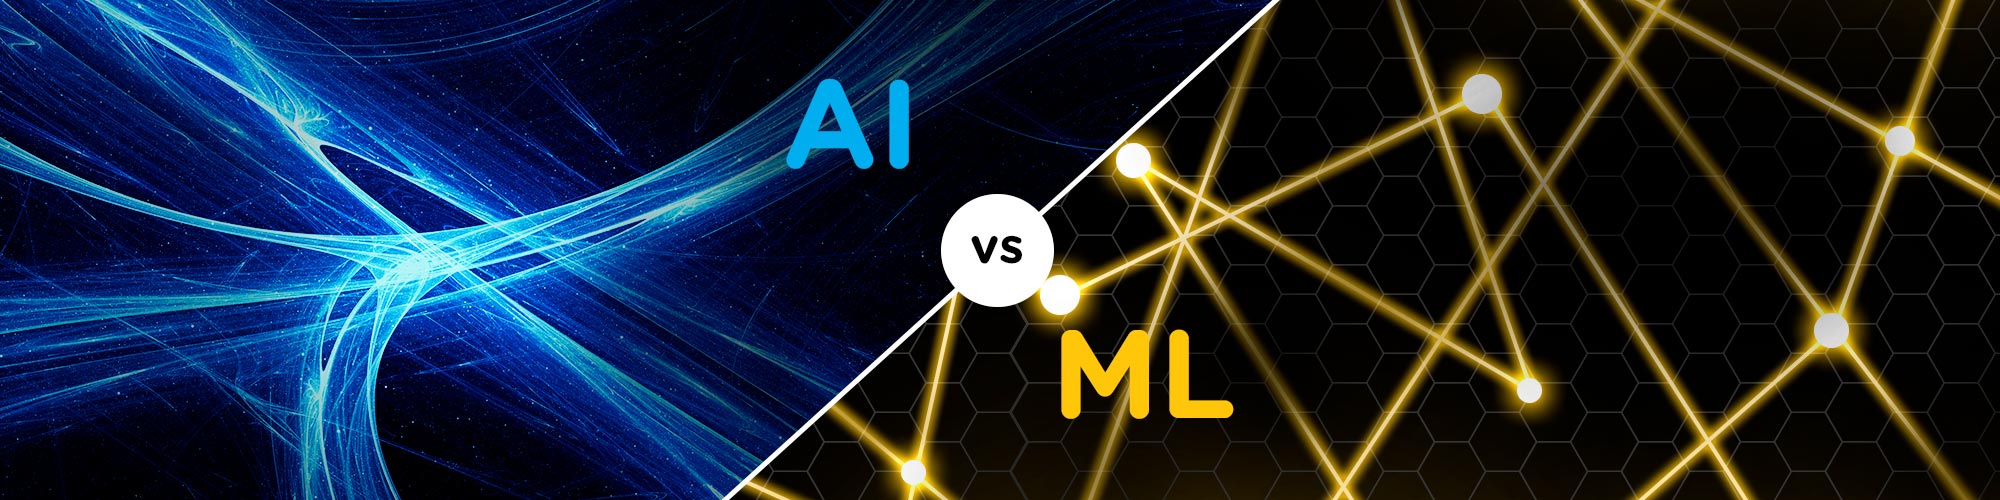 AI vs ML Banner